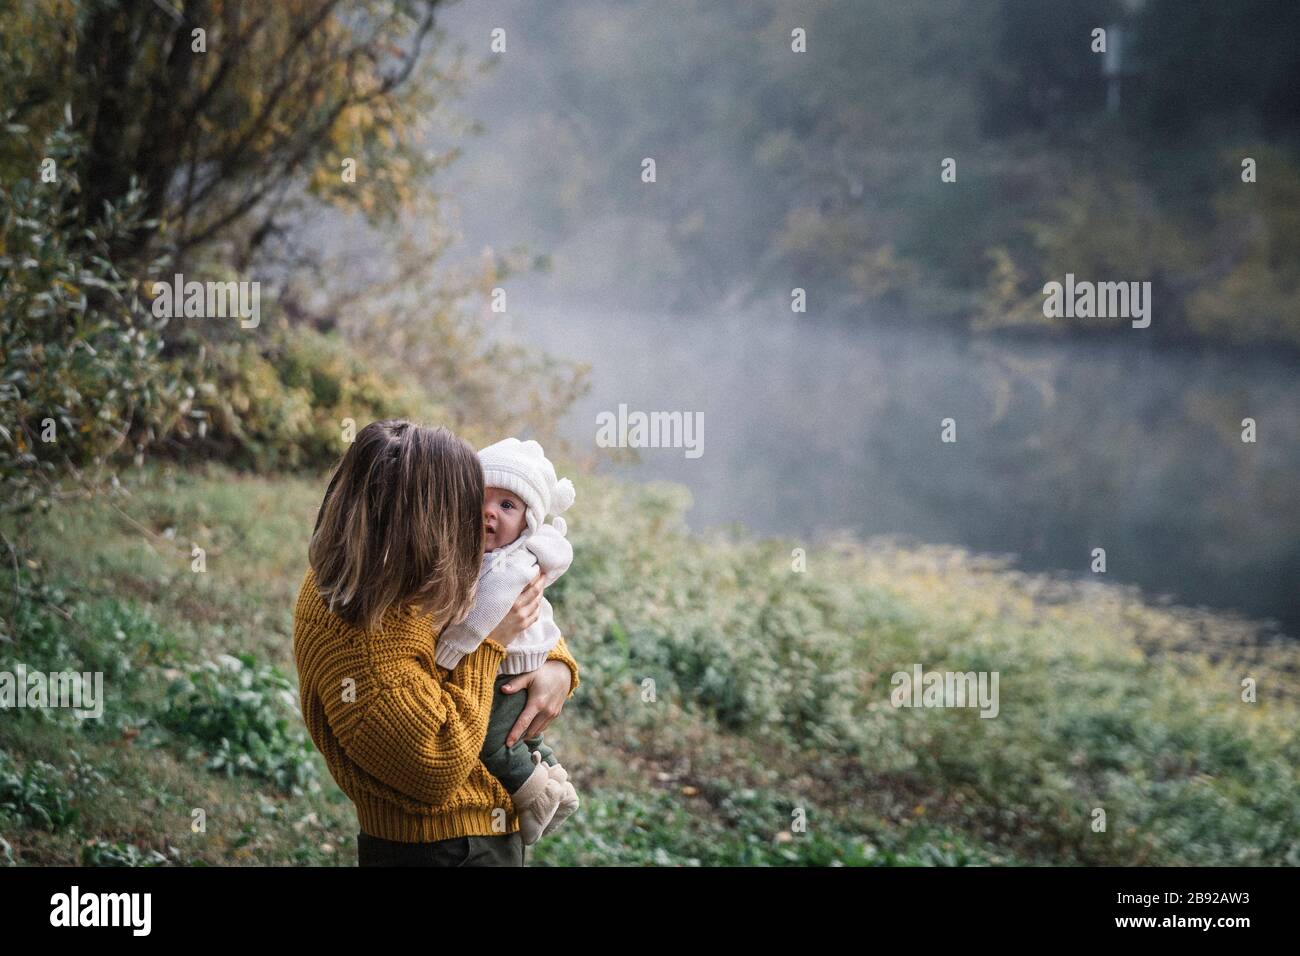 Une femme tient un bébé près d'une rivière Banque D'Images